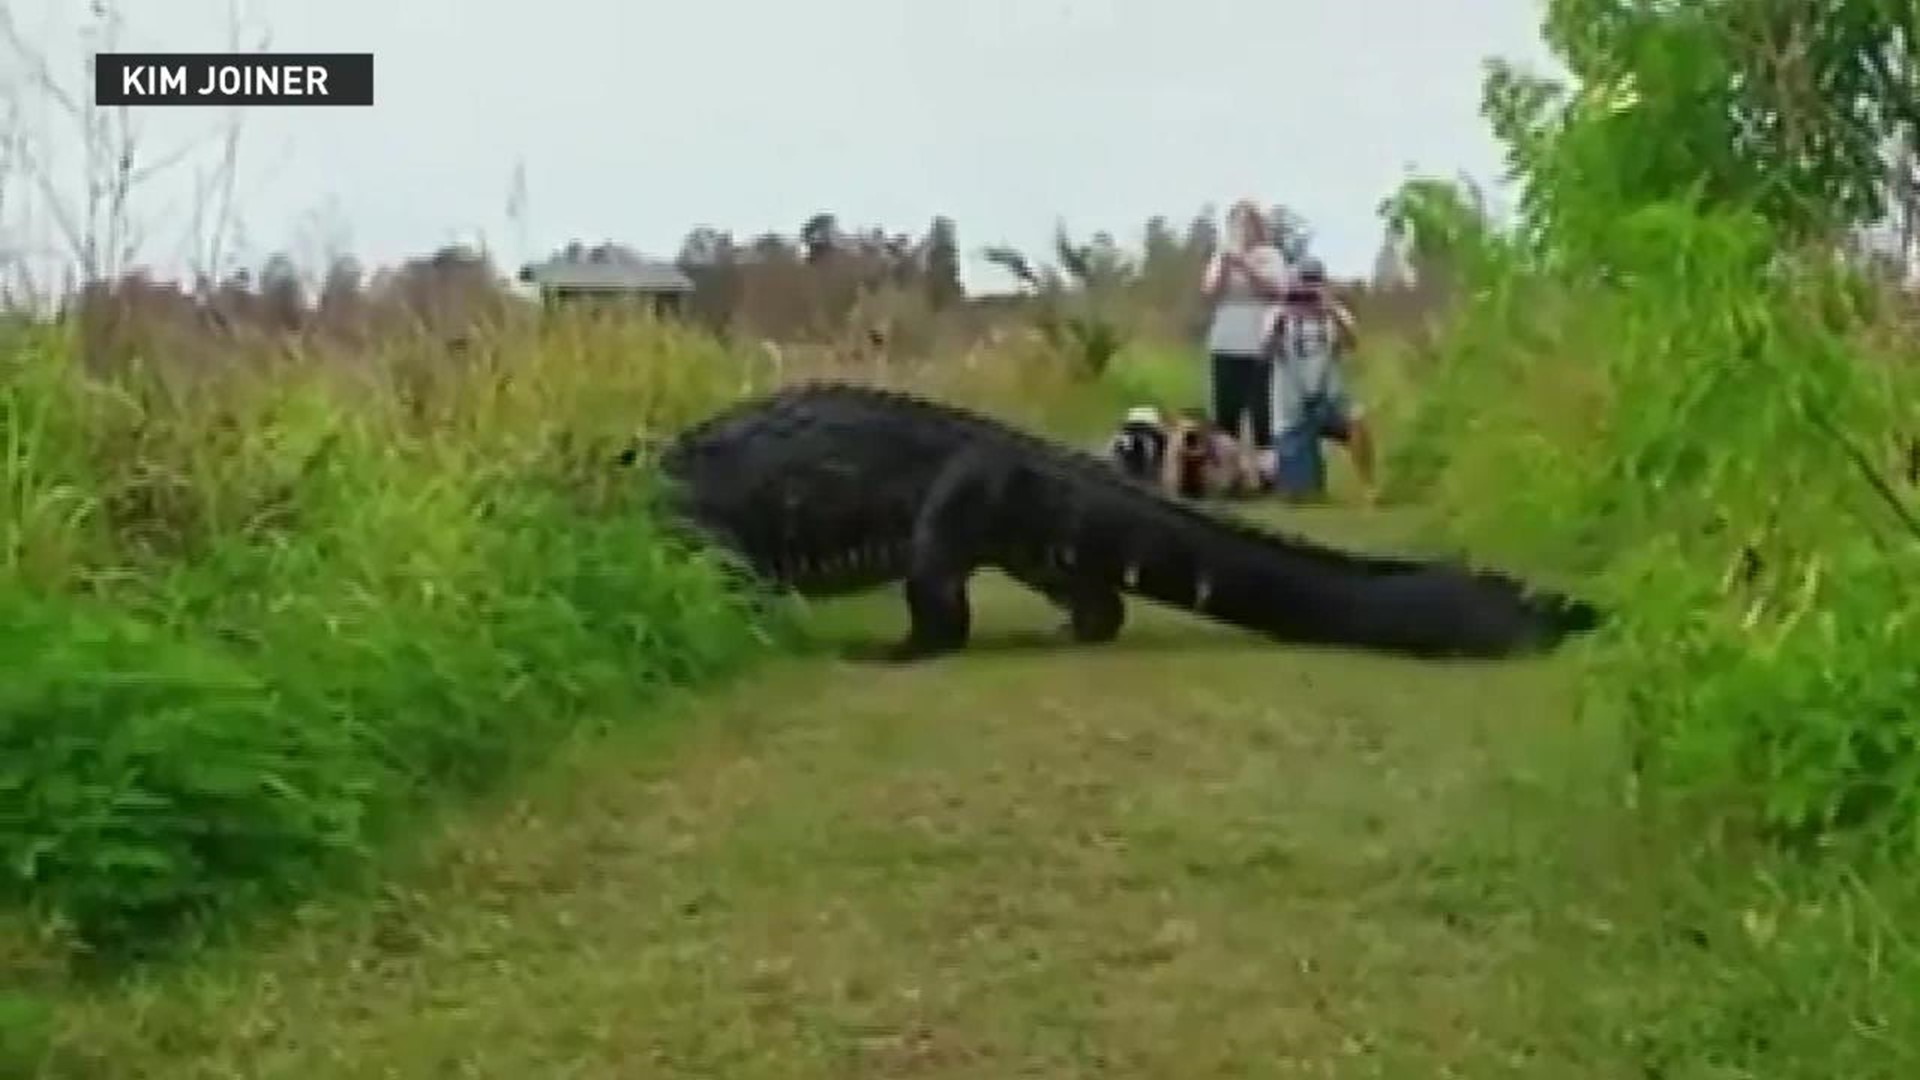 Massive alligator spotted at Florida preserve